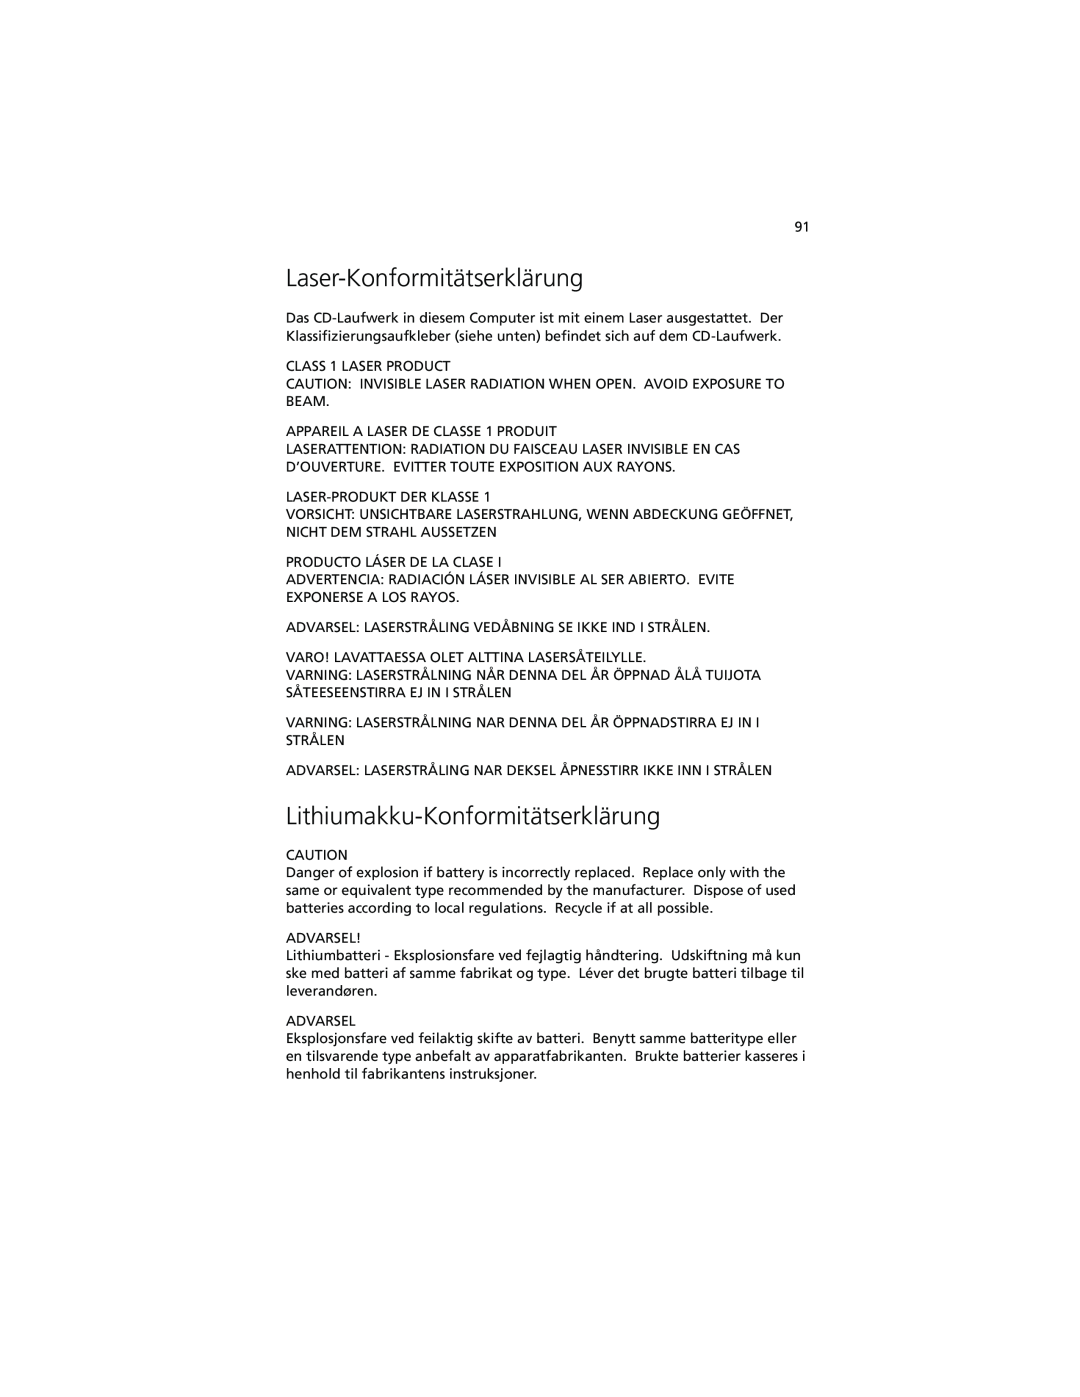 Acer C100-Series manual Laser-Konformitätserklärung, Lithiumakku-Konformitätserklärung 